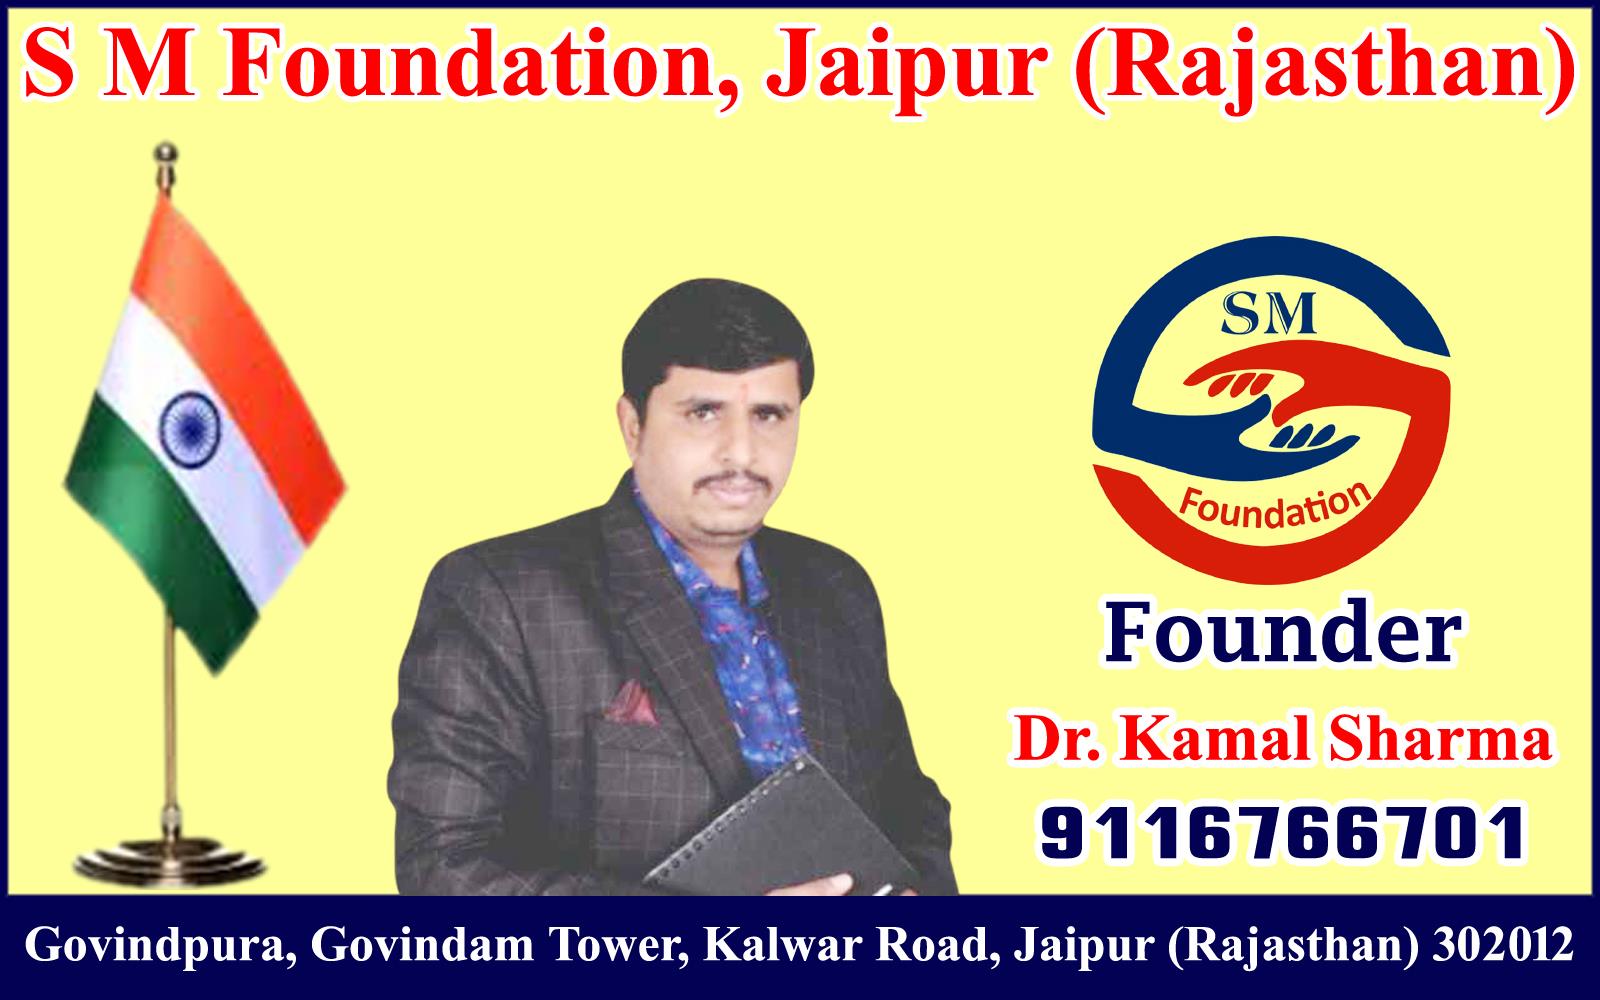 Dr. Kamal Sharma - S M Foundation, Jaipur (Rajasthan)